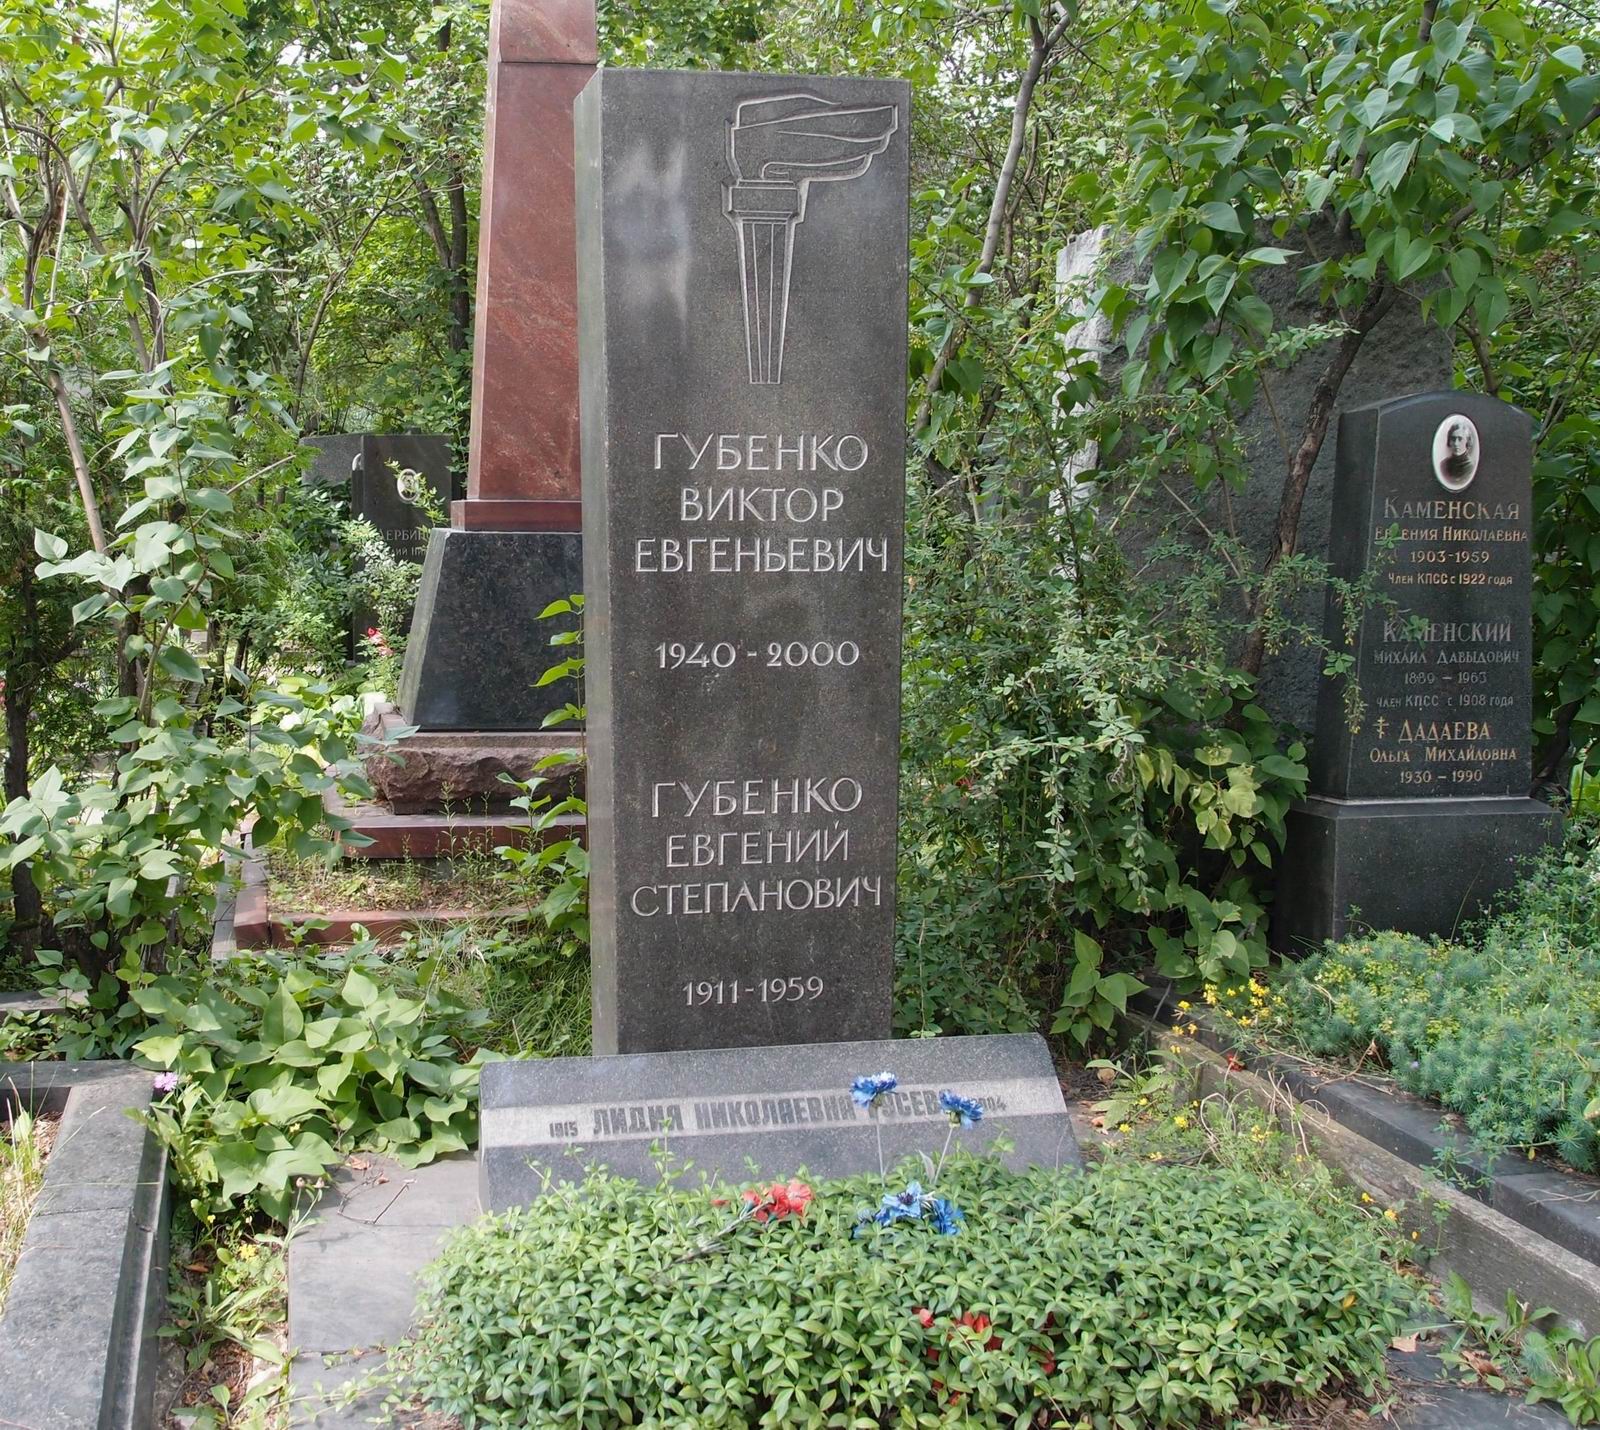 Памятник на могиле Губенко Е.С. (1911-1959), на Новодевичьем кладбище (8-1-9).